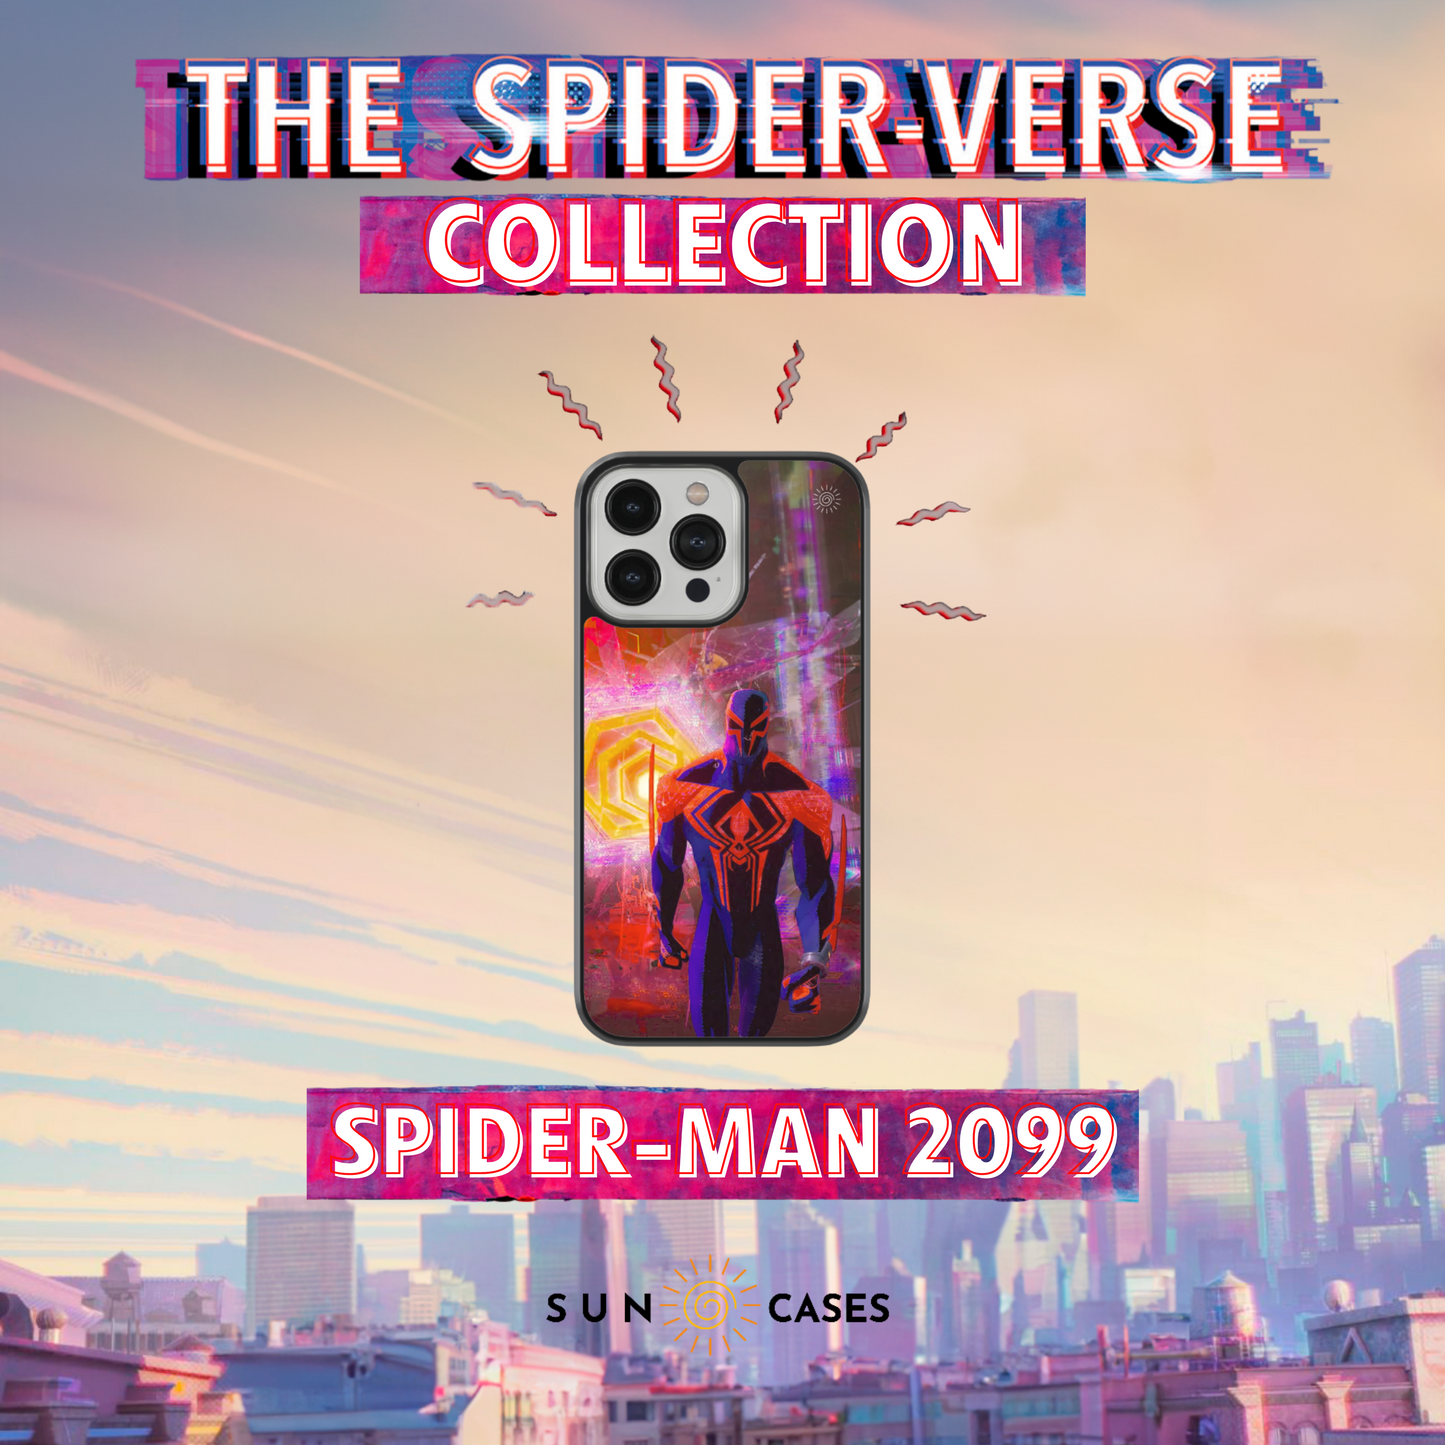 The Spider-Verse Collection - Spider-Man 2099